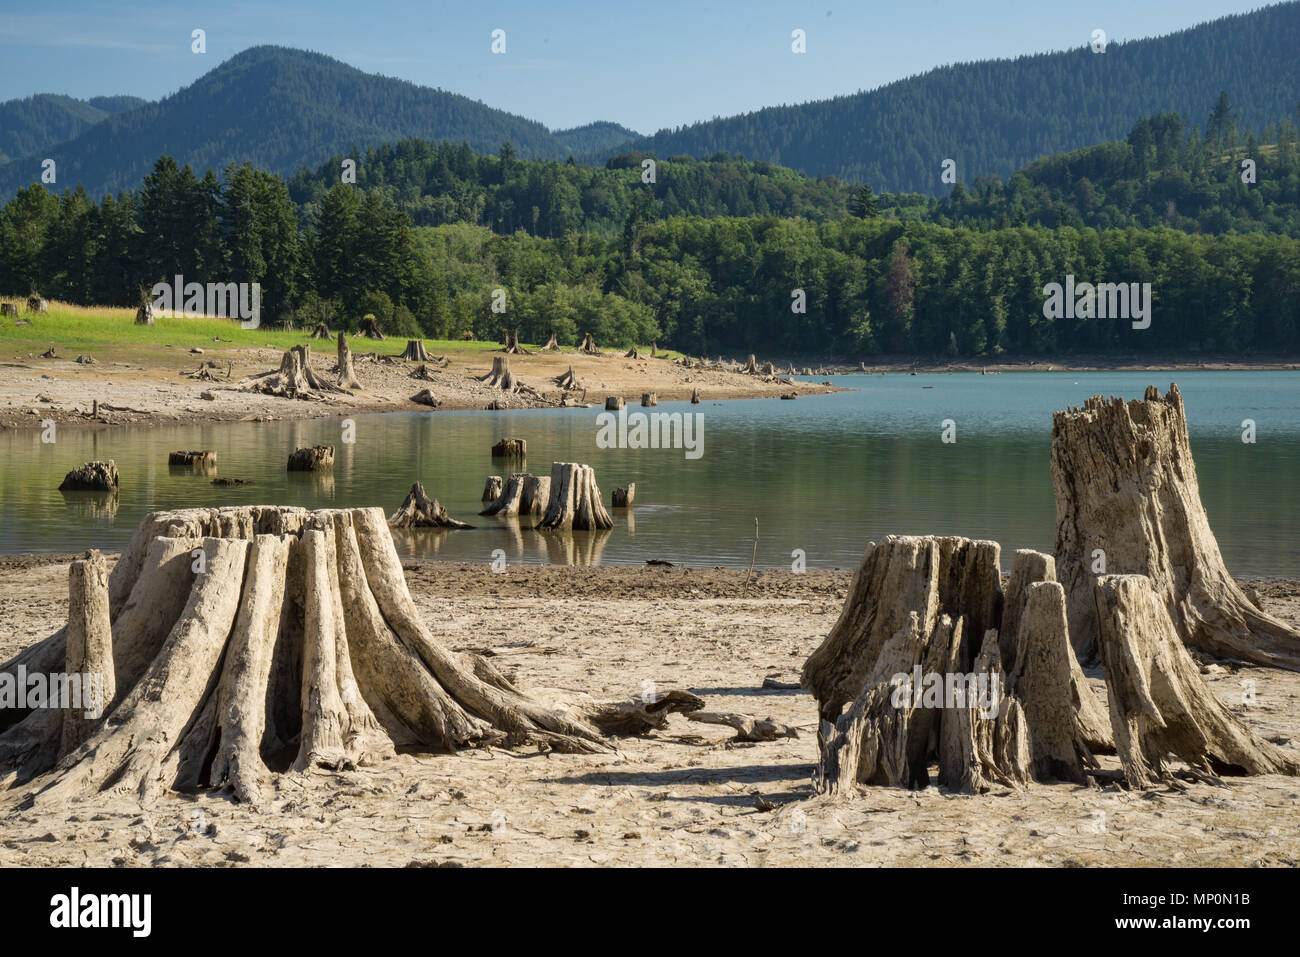 Viejos tocones de árboles de la tala a lo largo de un lago en el estado de Washington Foto de stock